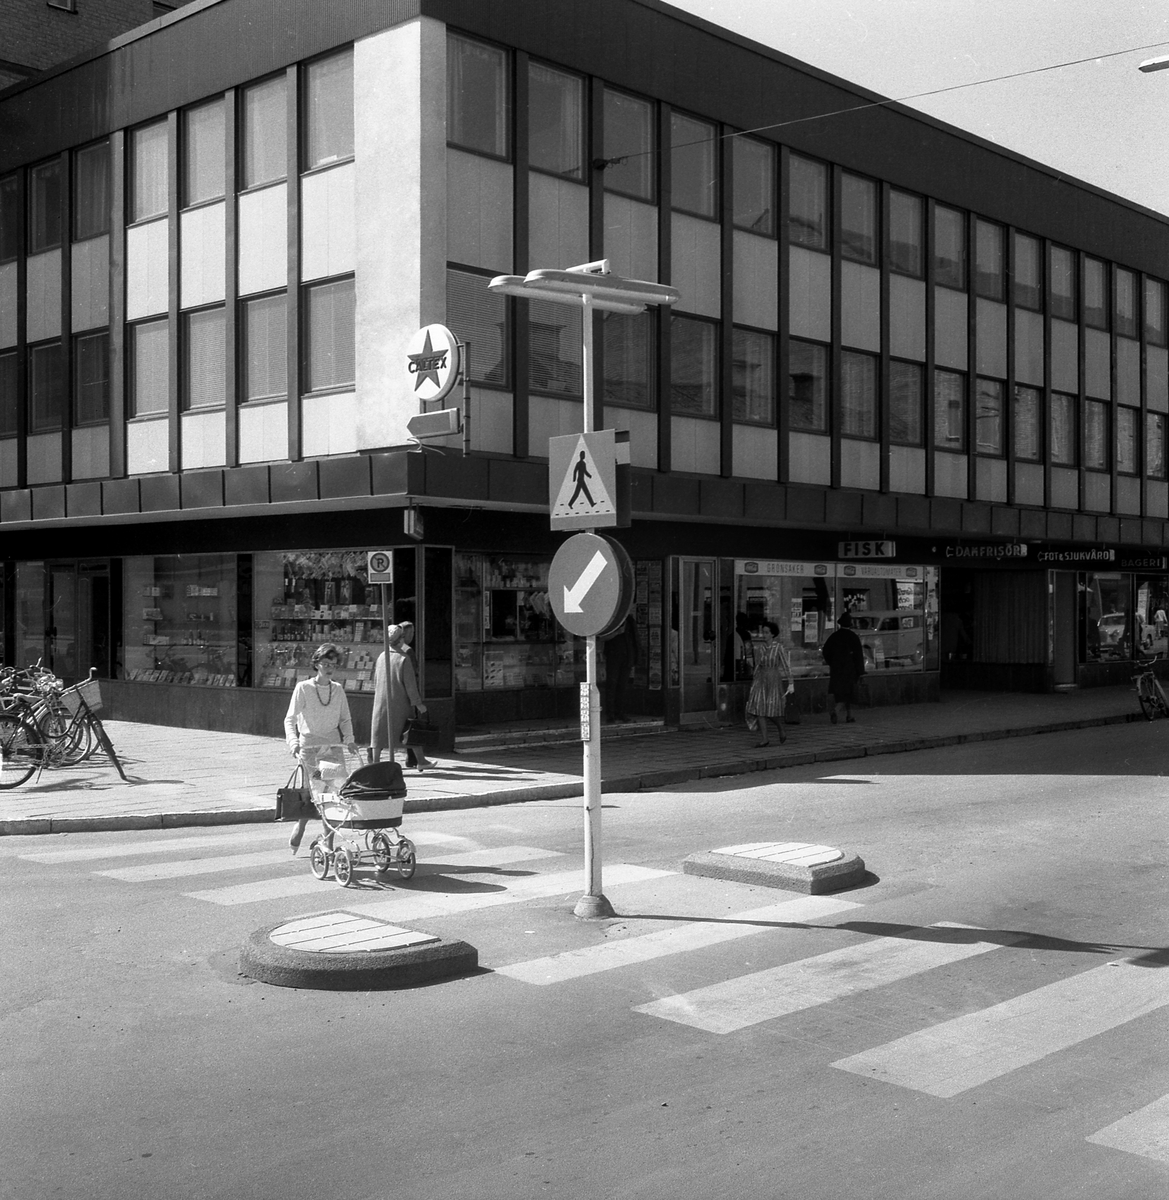 Motiv från Linköping 1964. Bildens egentlinga syfte var sannolikt att  uppmärksamma innovationen med refuger vid övergångsställen. Vi betraktare av senare tid får en glimt av miljön av Storgatans nedre del där gångstråkets placering förklaras av att biltrafik ännu var tillåten från och till Hamngatan.